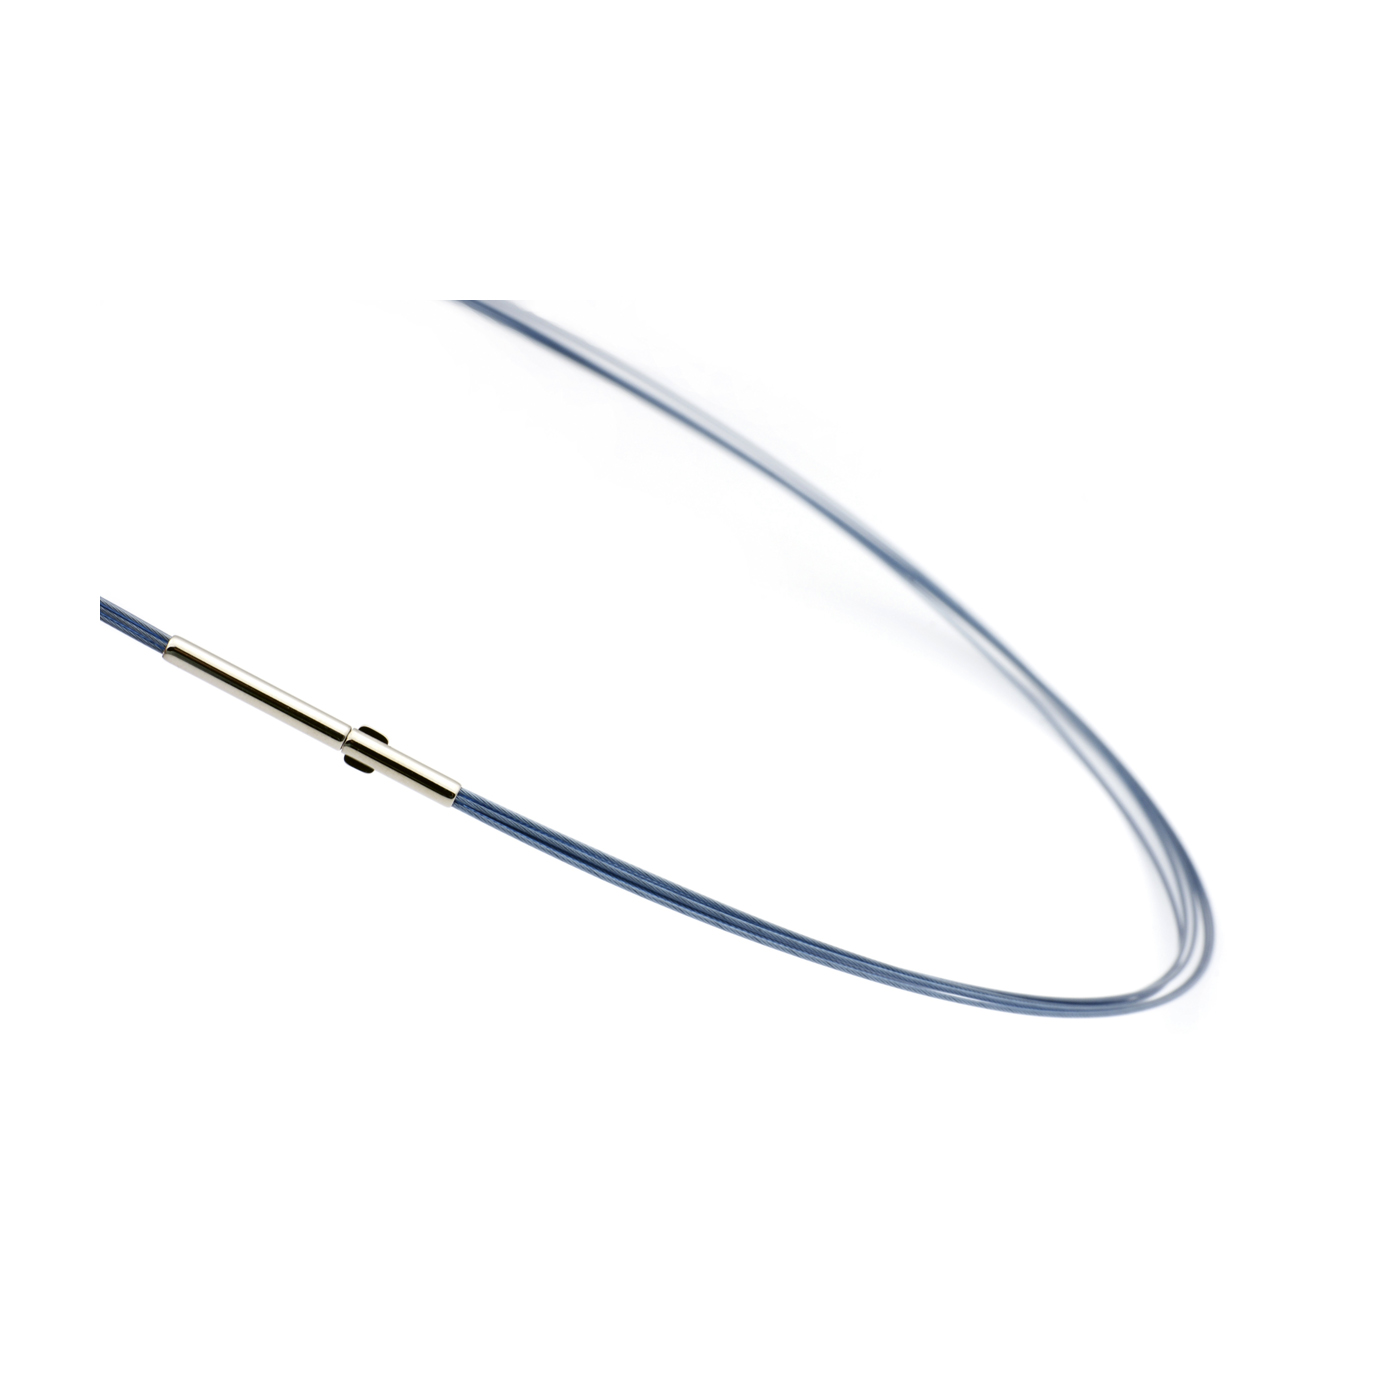 Seilcollier "Colour Cable", ES, montana-blau, 5-reihig, 42cm - 1 Stück